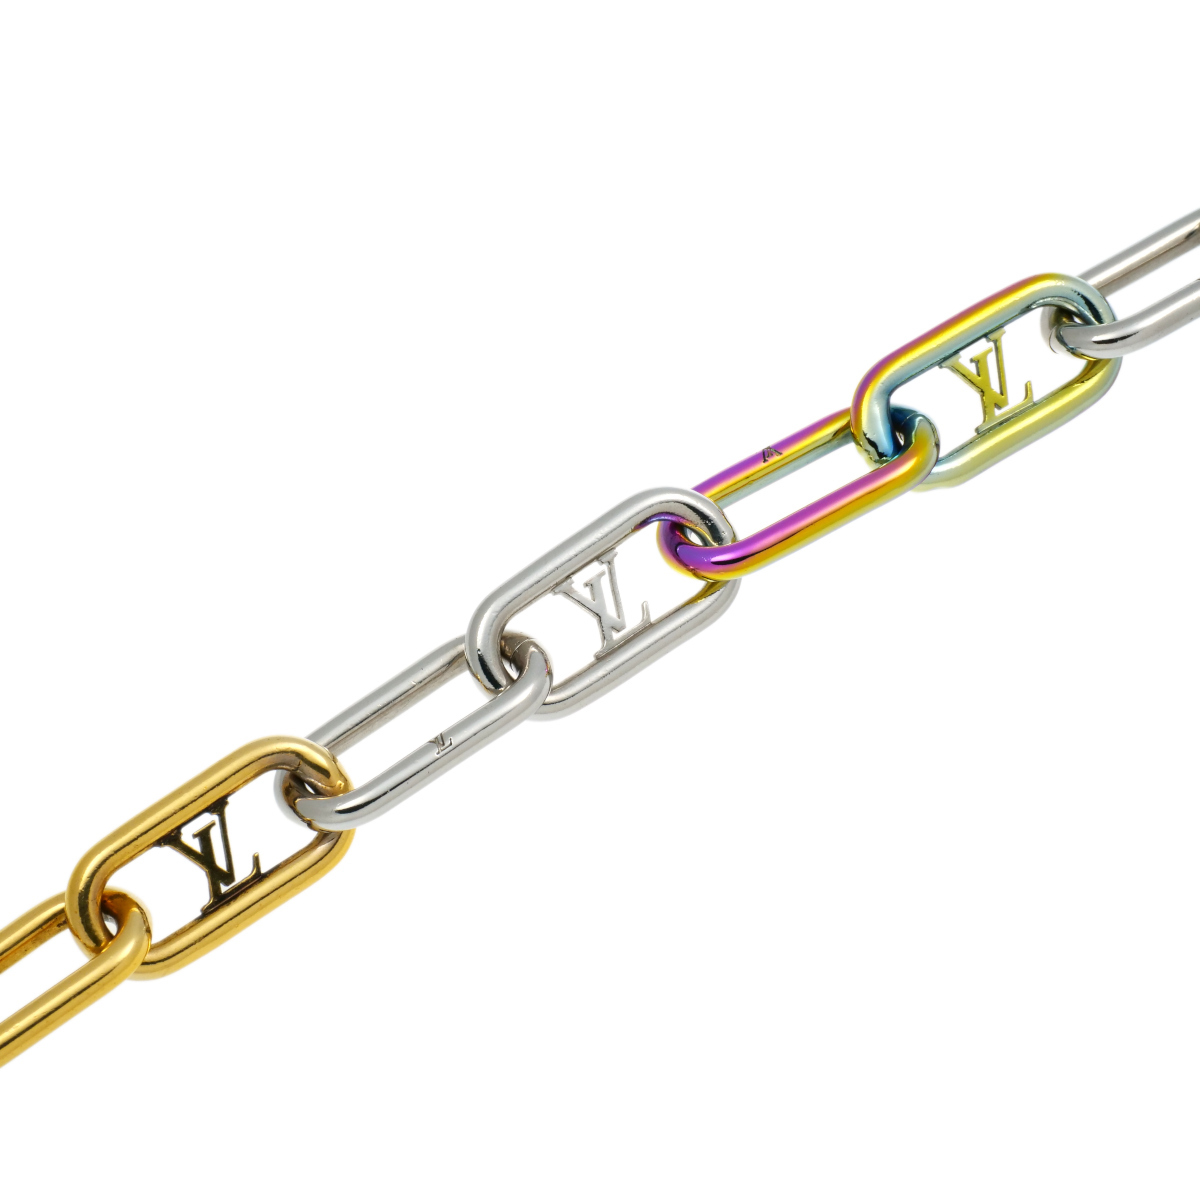 LouisVuitton Louis Vuitton brass re signature chain M80178 Rainbow bracele 20cm used A[. shop pawnshop J1698]